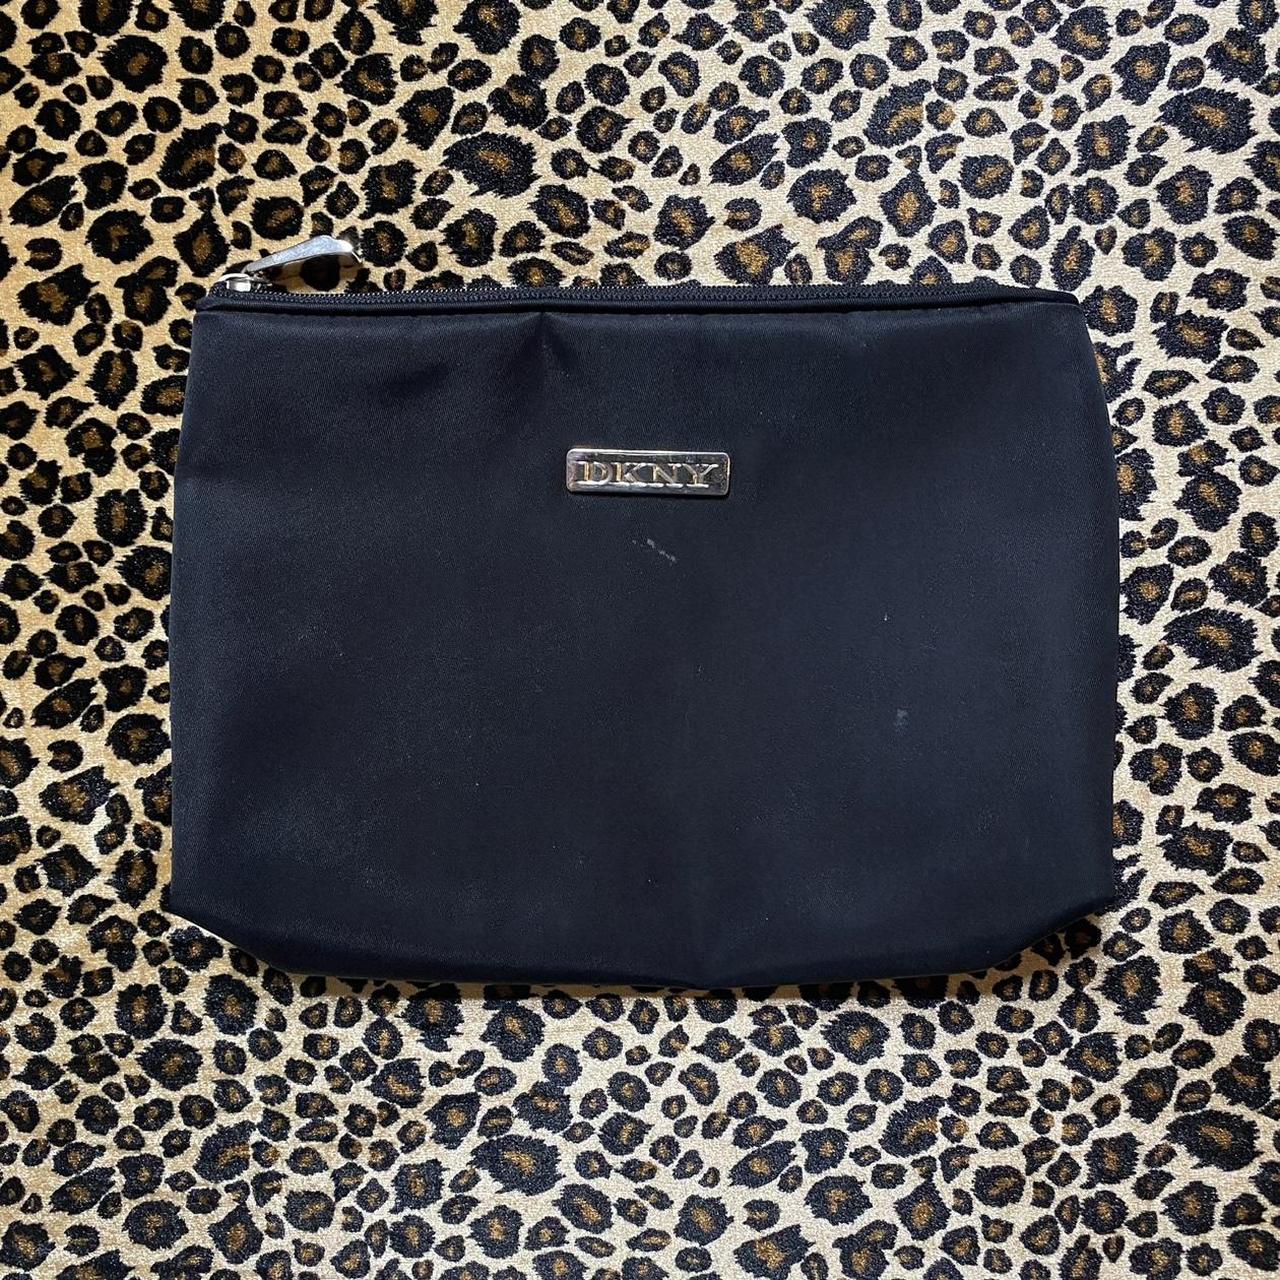 Product Image 1 - ♥︎ DKNY makeup bag ♥︎

♡